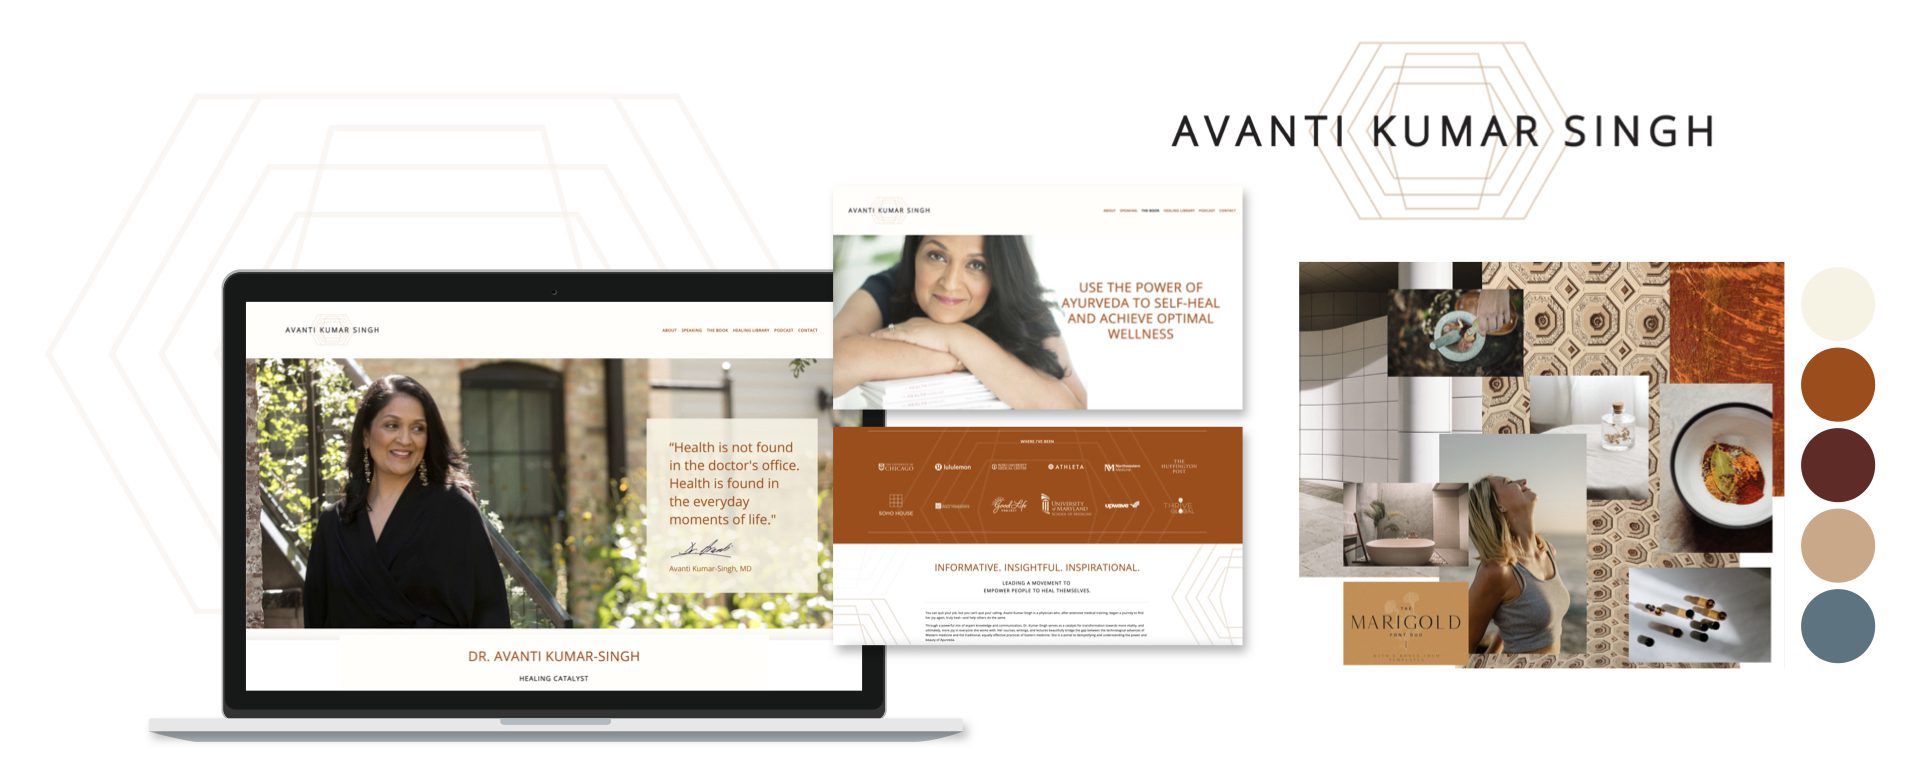 Avanti Kumar-Singh - Client Story - Logo & Color Palette